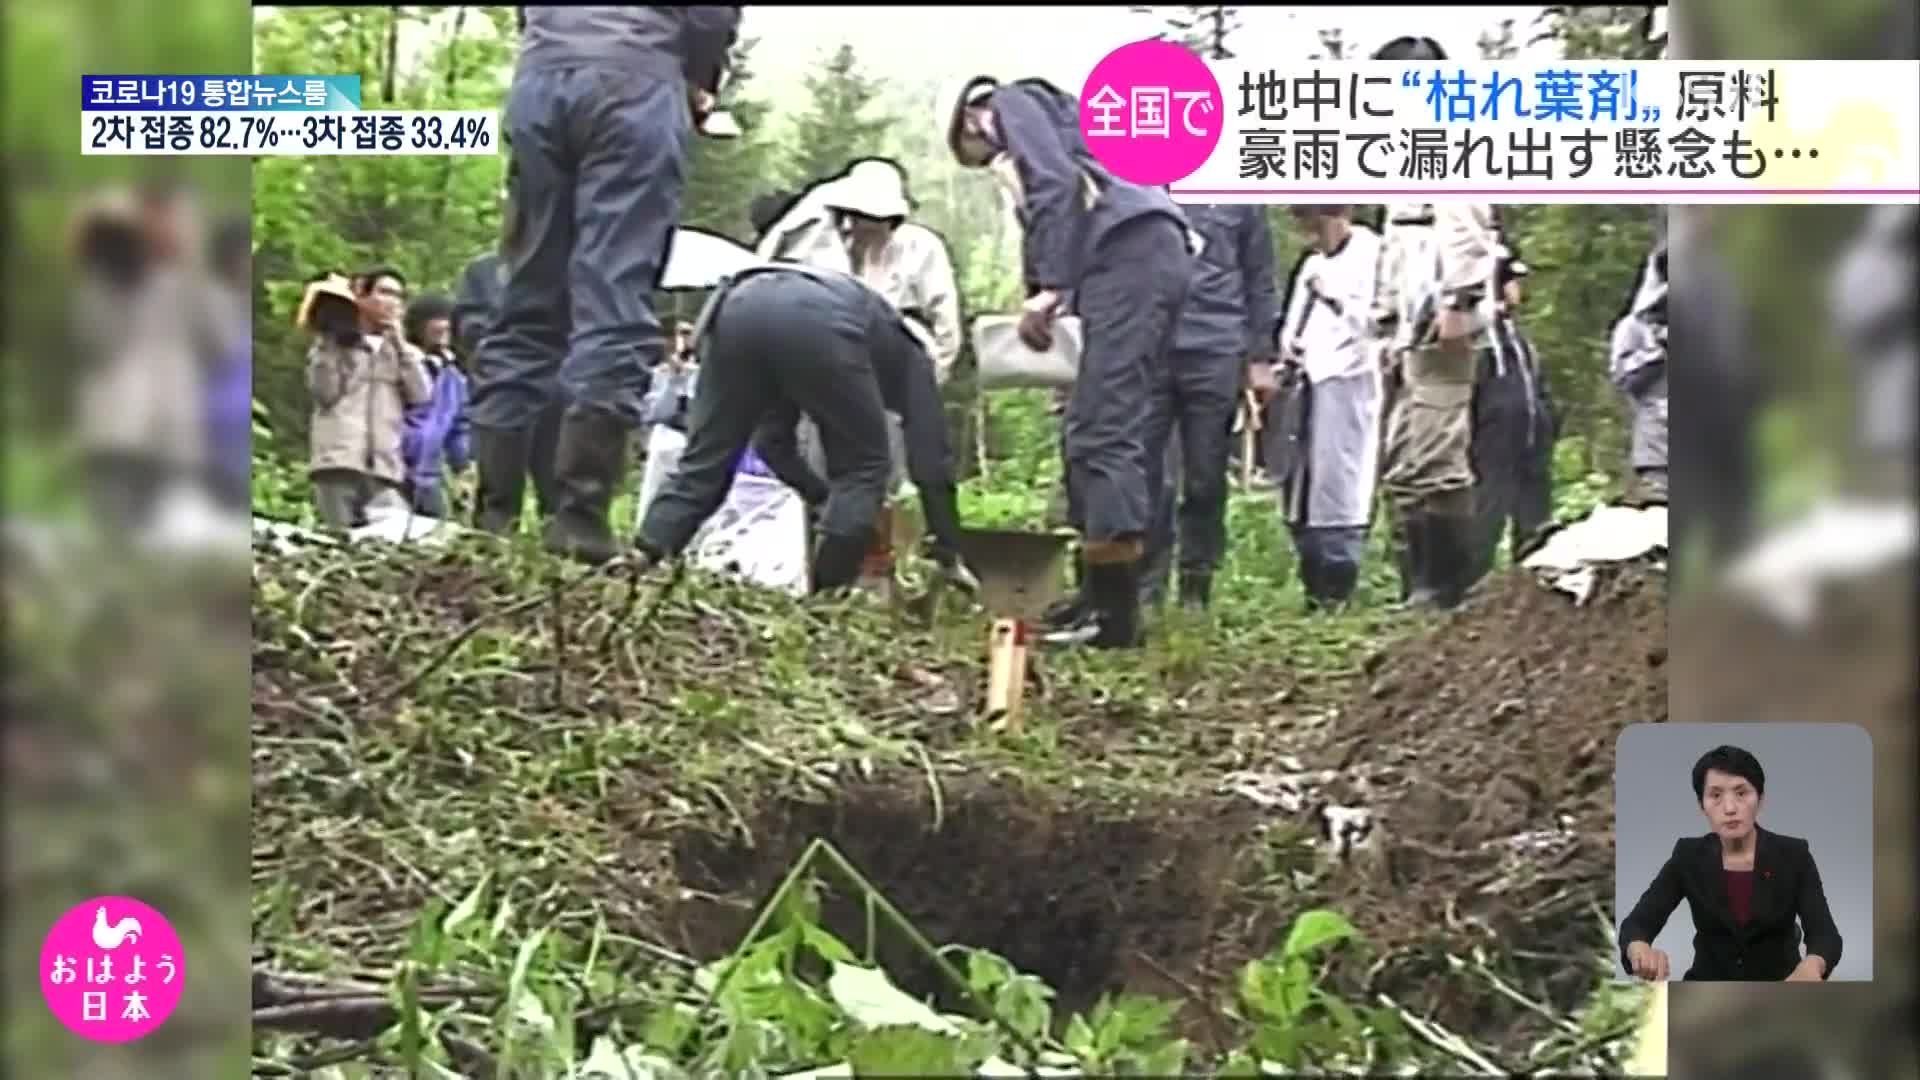 일본 곳곳에 묻힌 고엽제 제초제로 오염 우려